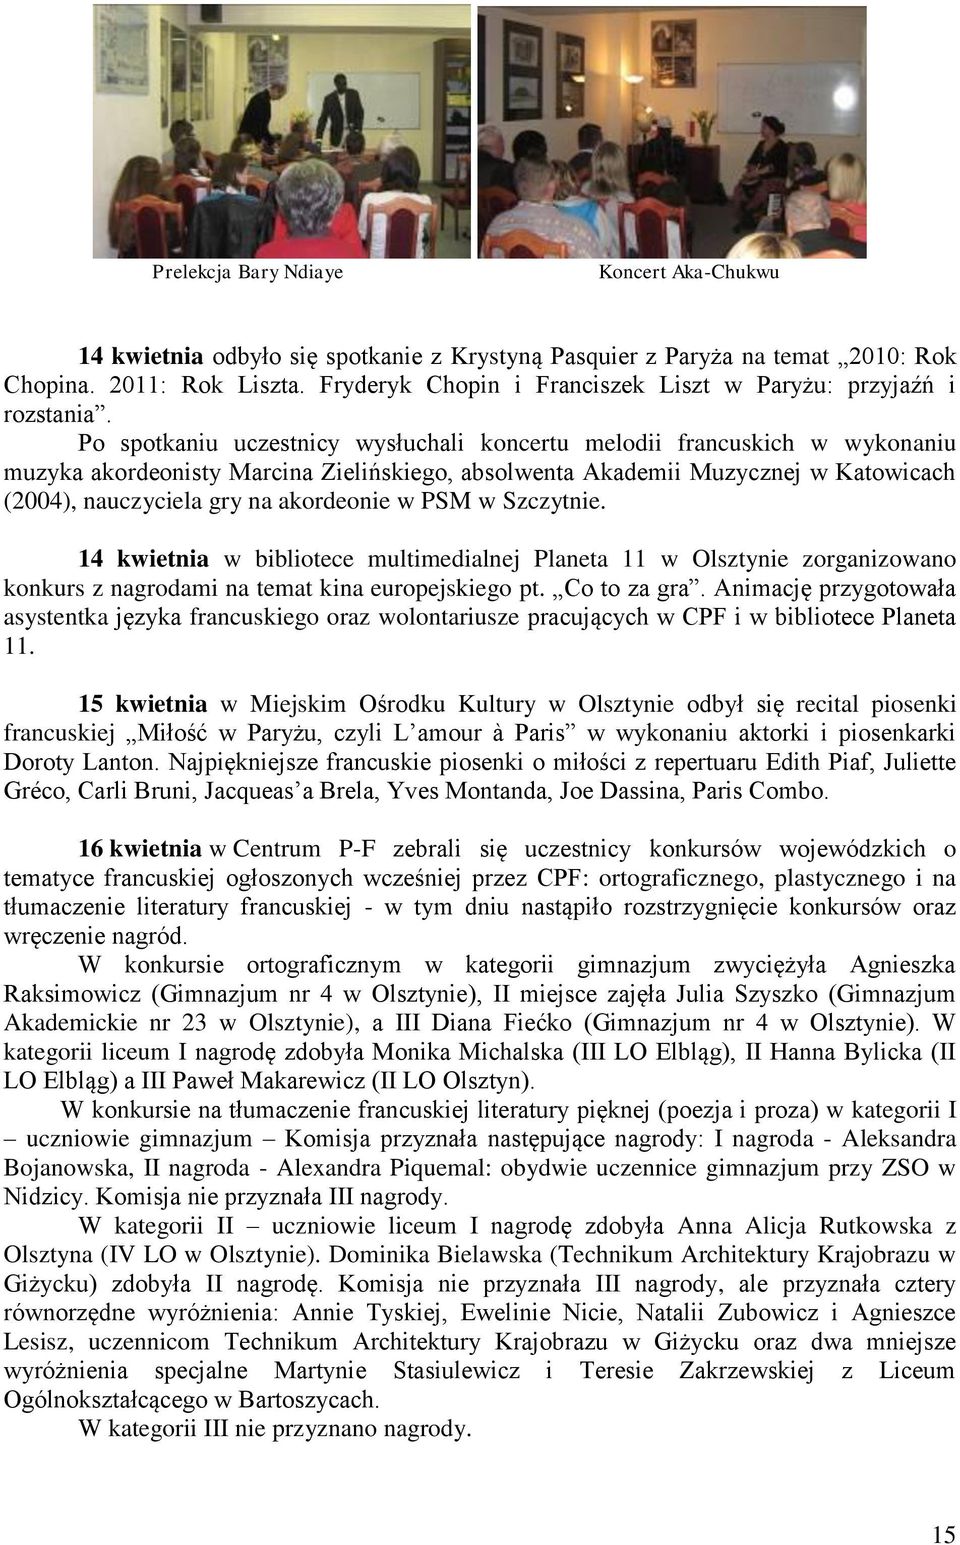 Po spotkaniu uczestnicy wysłuchali koncertu melodii francuskich w wykonaniu muzyka akordeonisty Marcina Zielińskiego, absolwenta Akademii Muzycznej w Katowicach (2004), nauczyciela gry na akordeonie